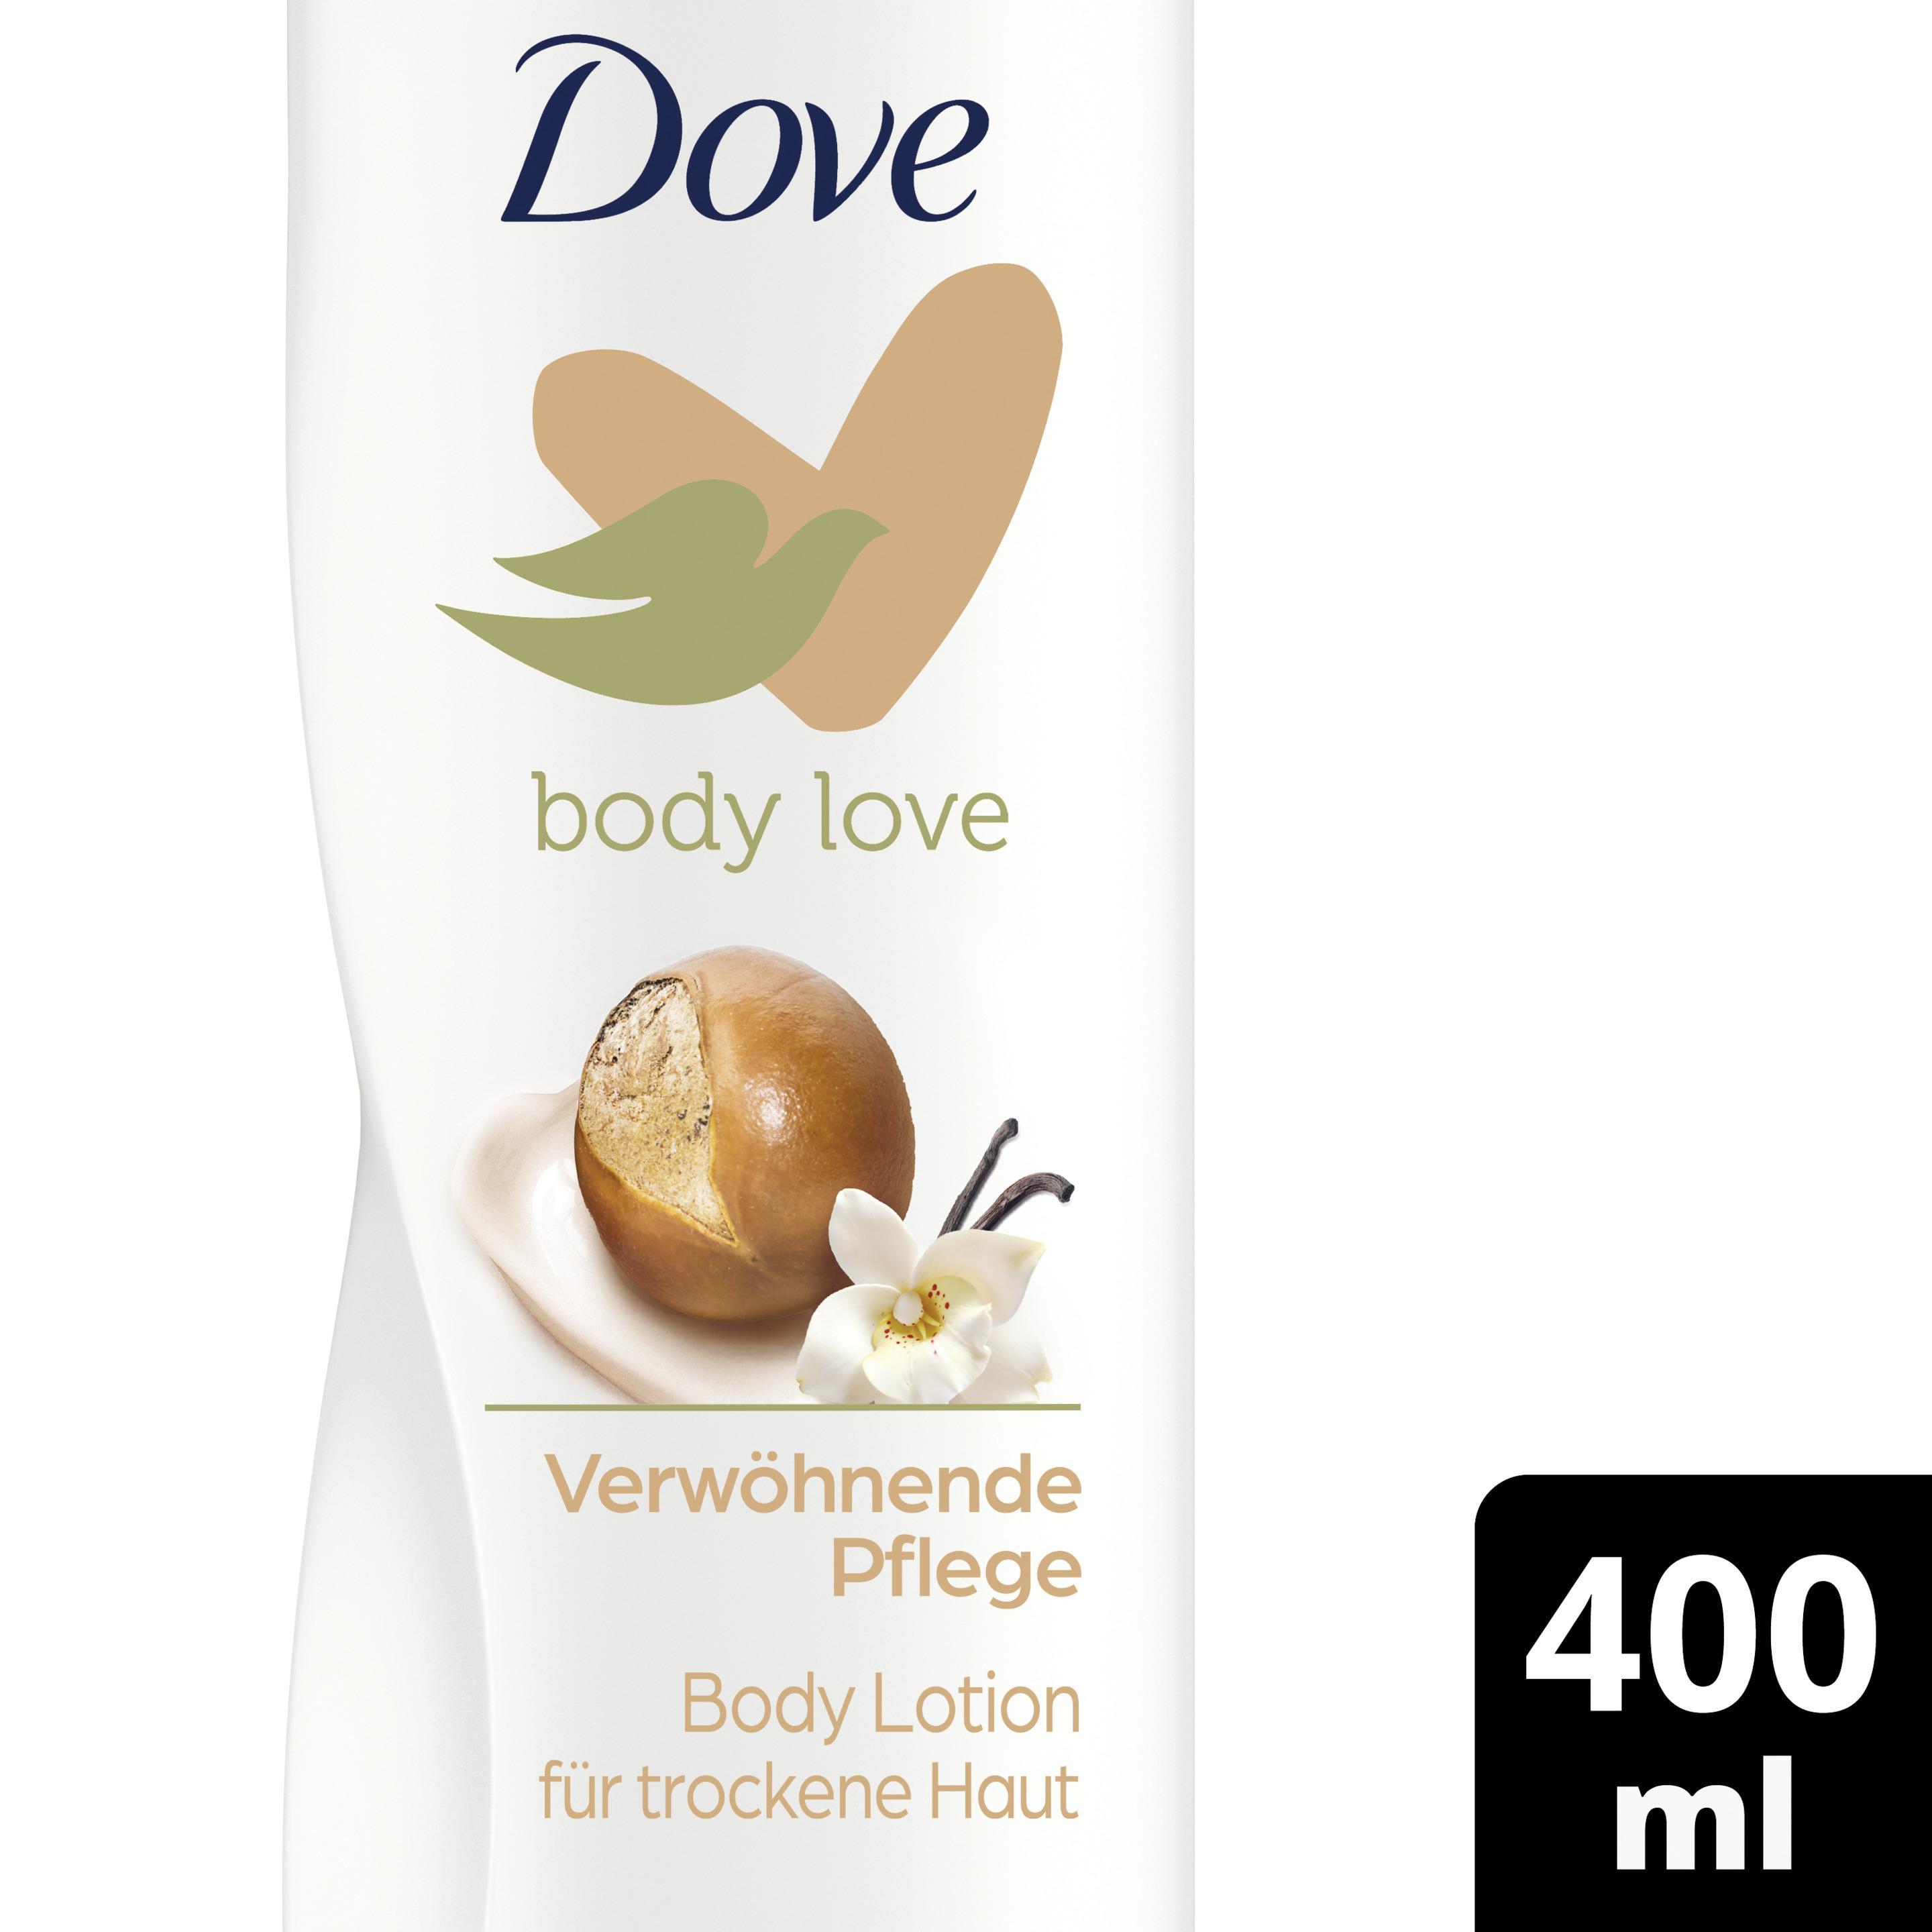 Dove Body Love Verwöhnende Pflege Body Lotion mit Sheabutter & Vanilleduft 400ml